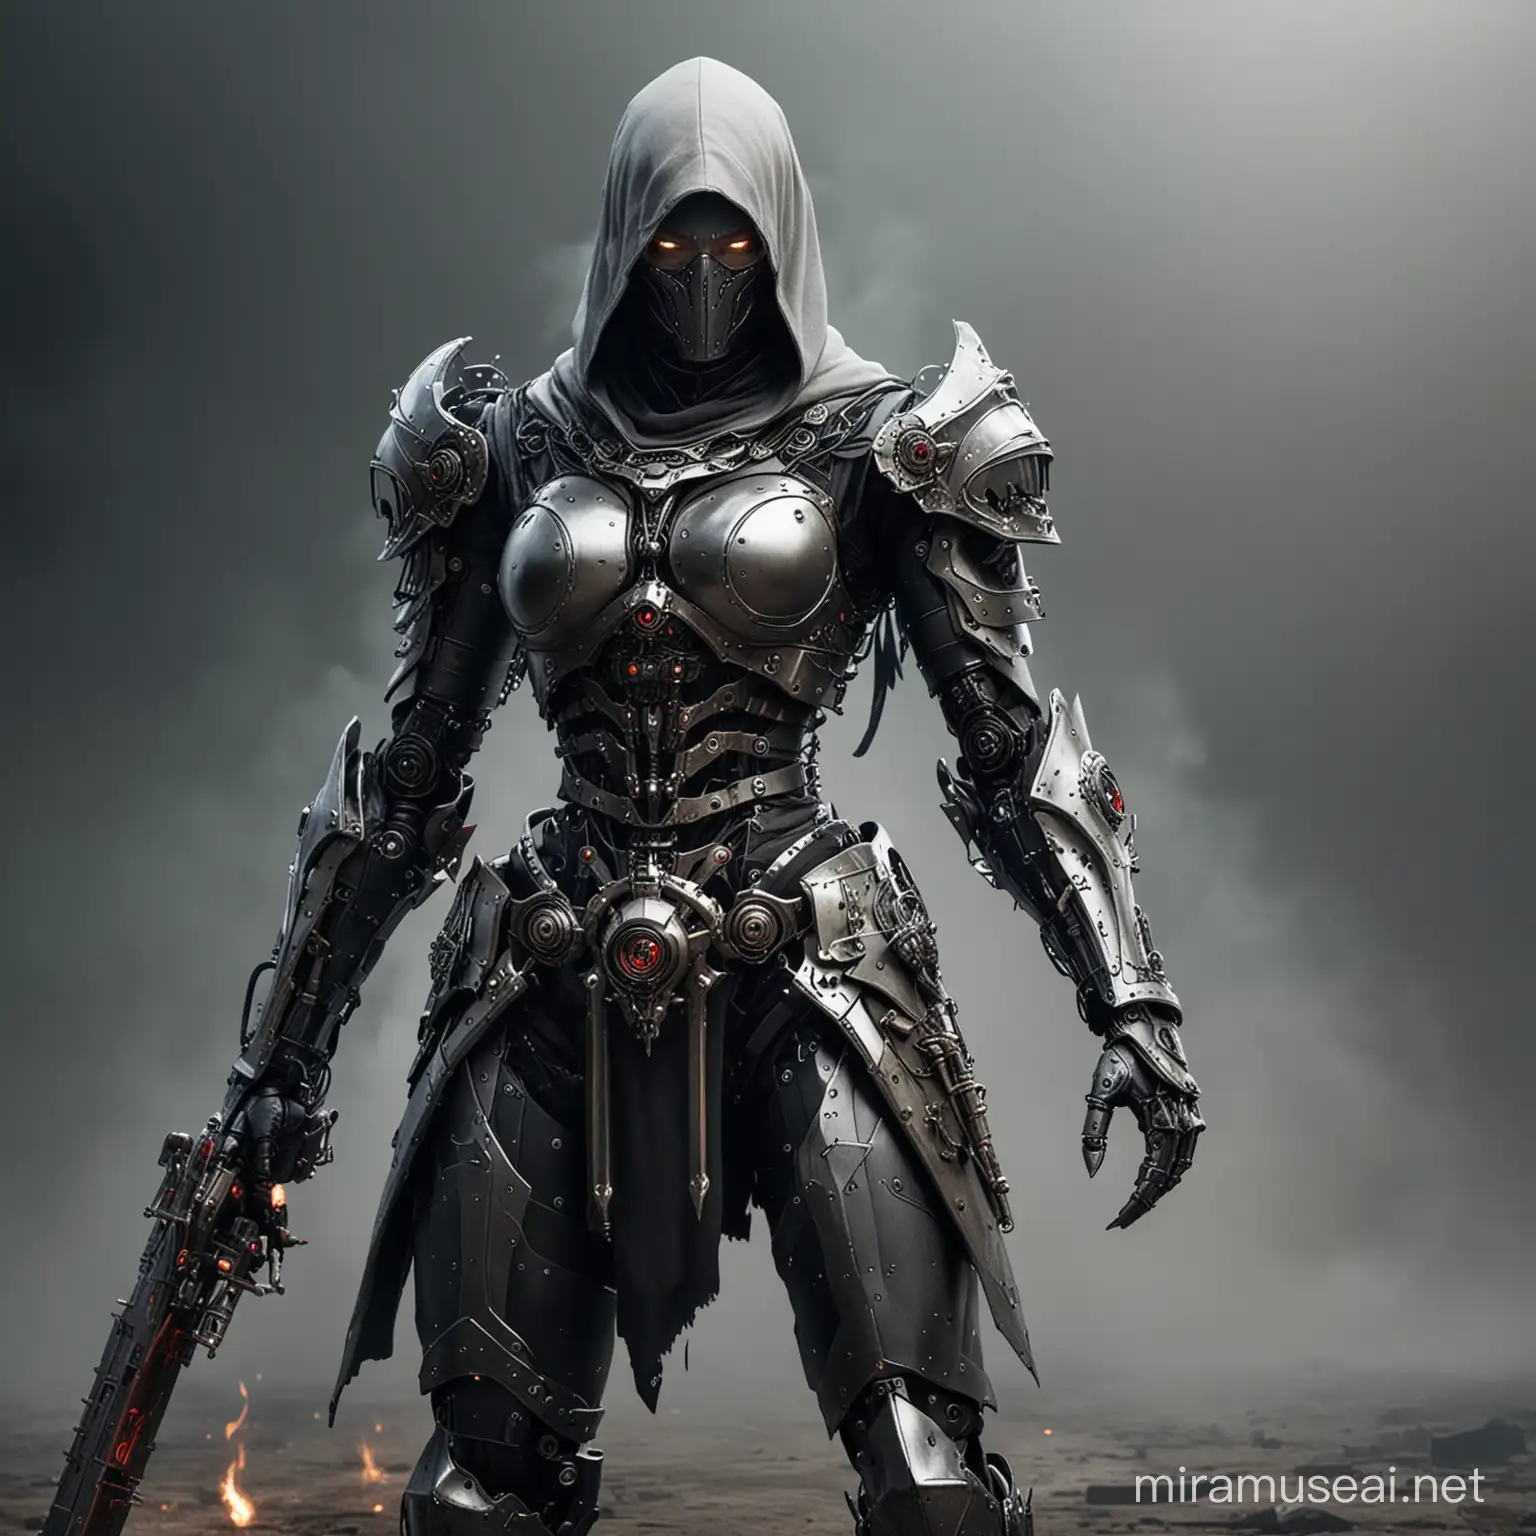 Medieval Fantasy Assassin Robot Conjuring Dark Magic